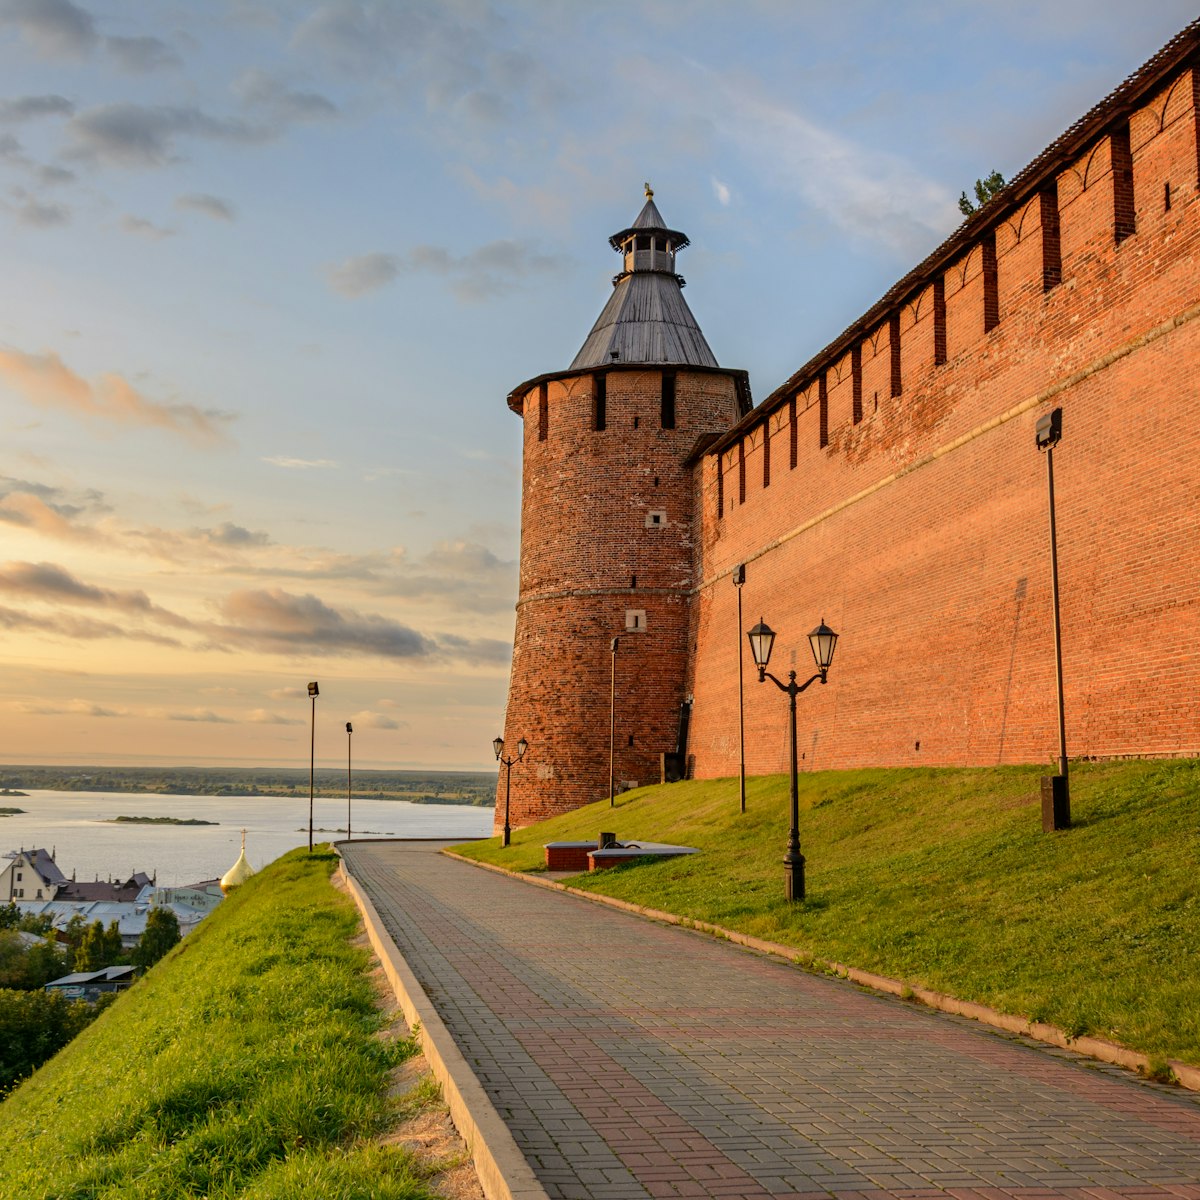 Nizhny Novgorod Kremlin at sunset.